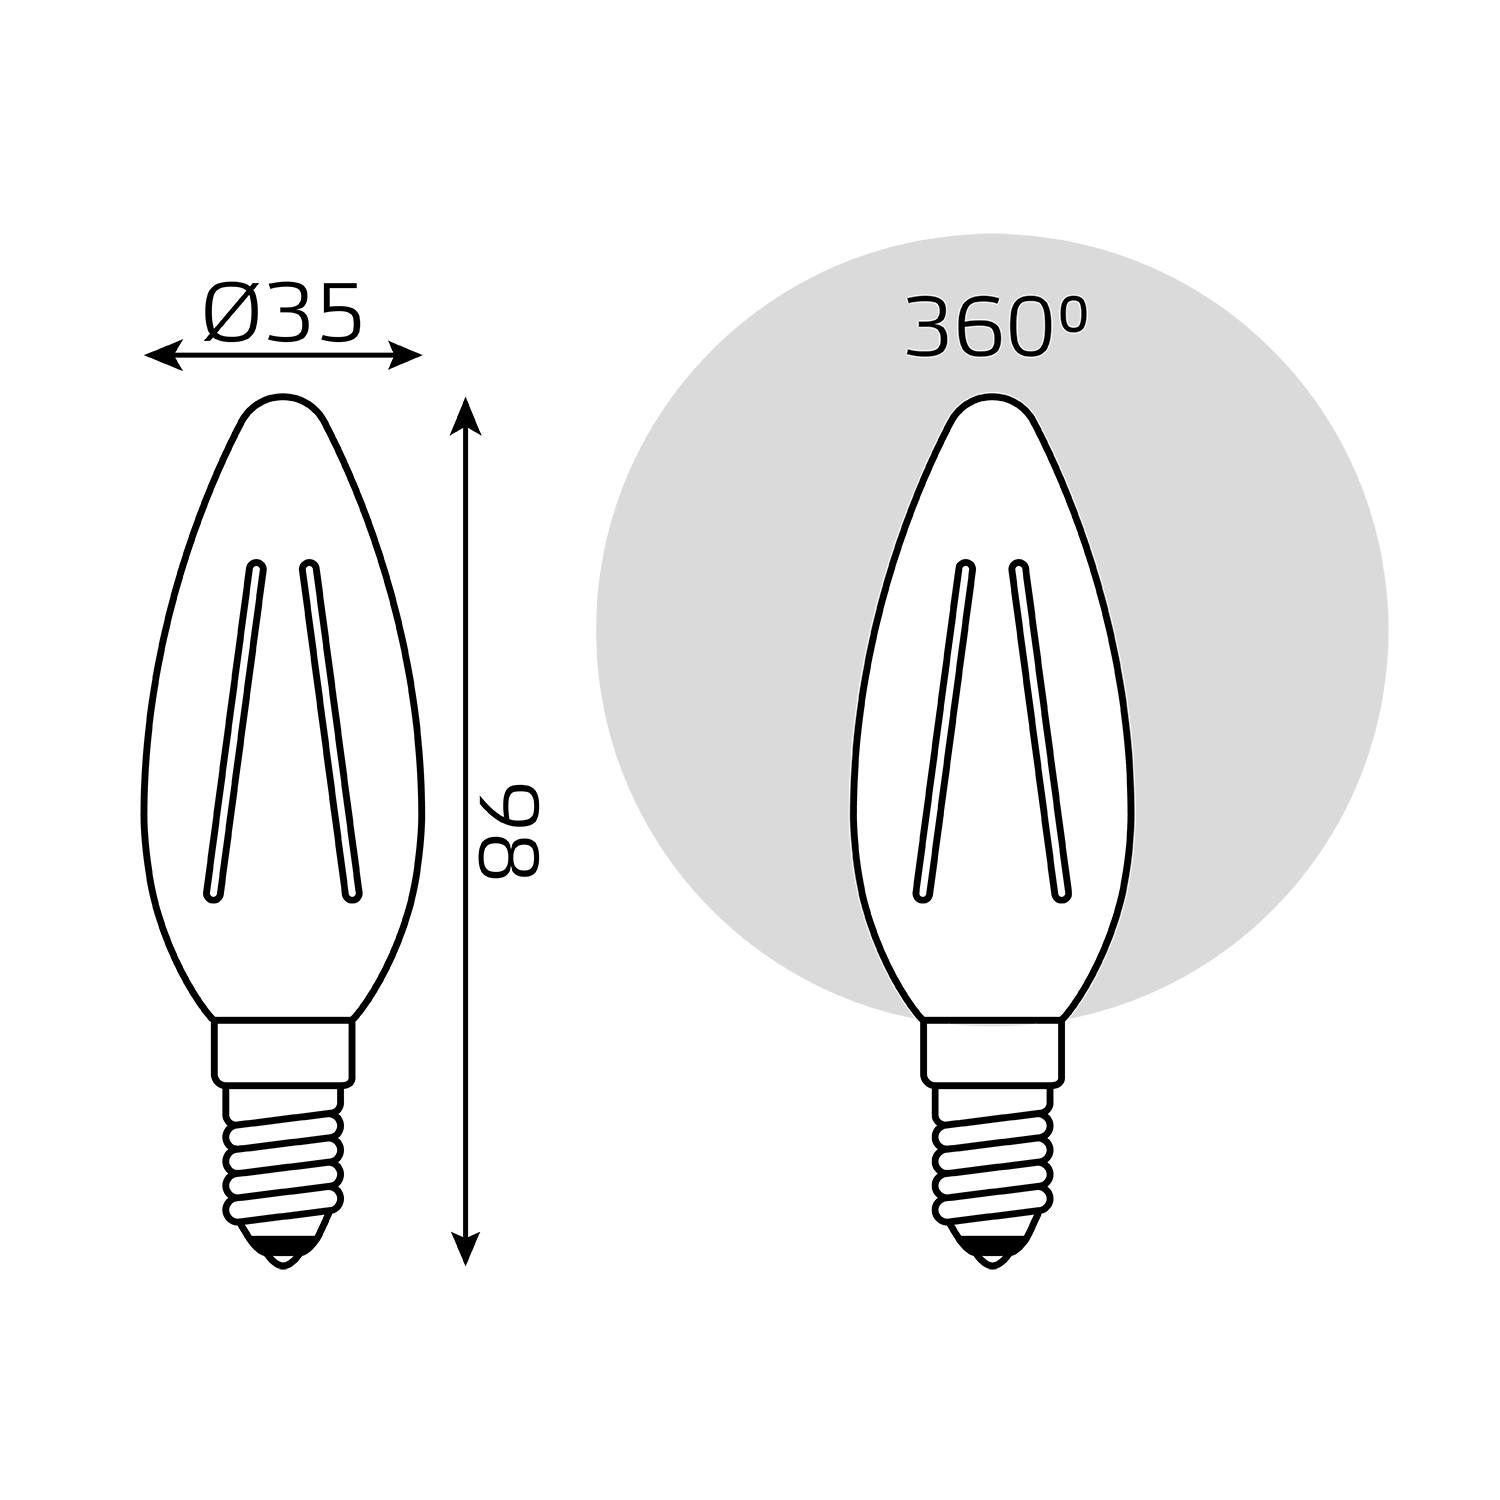 Лампочка светодиодная Е14 Свеча 11W нейтр белый свет 4100К упаковка 10 шт. Gauss Filament